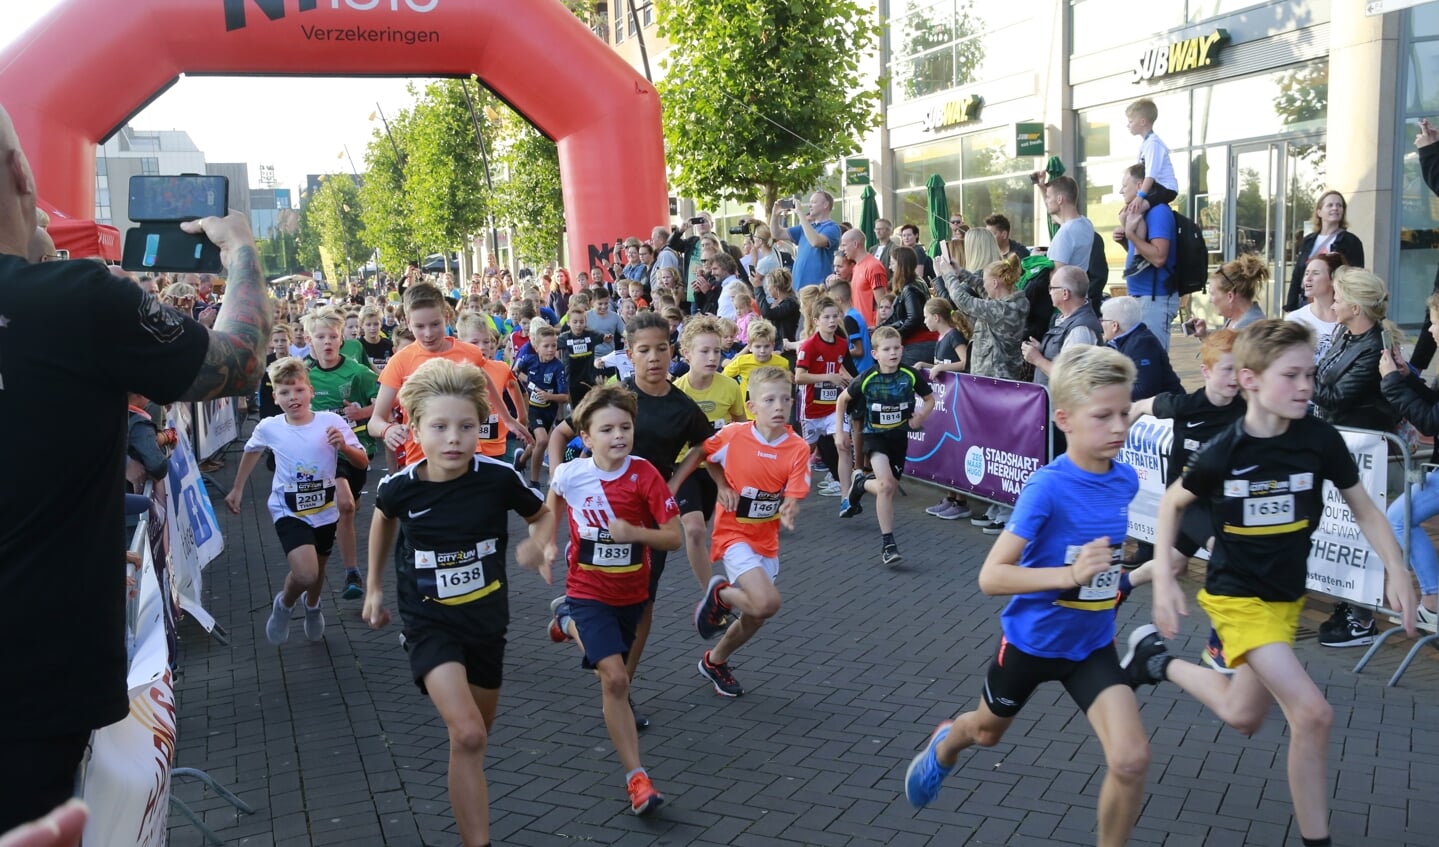 De jeugd gaat van start in de Heerhugowaard Cityrun editie 2021.